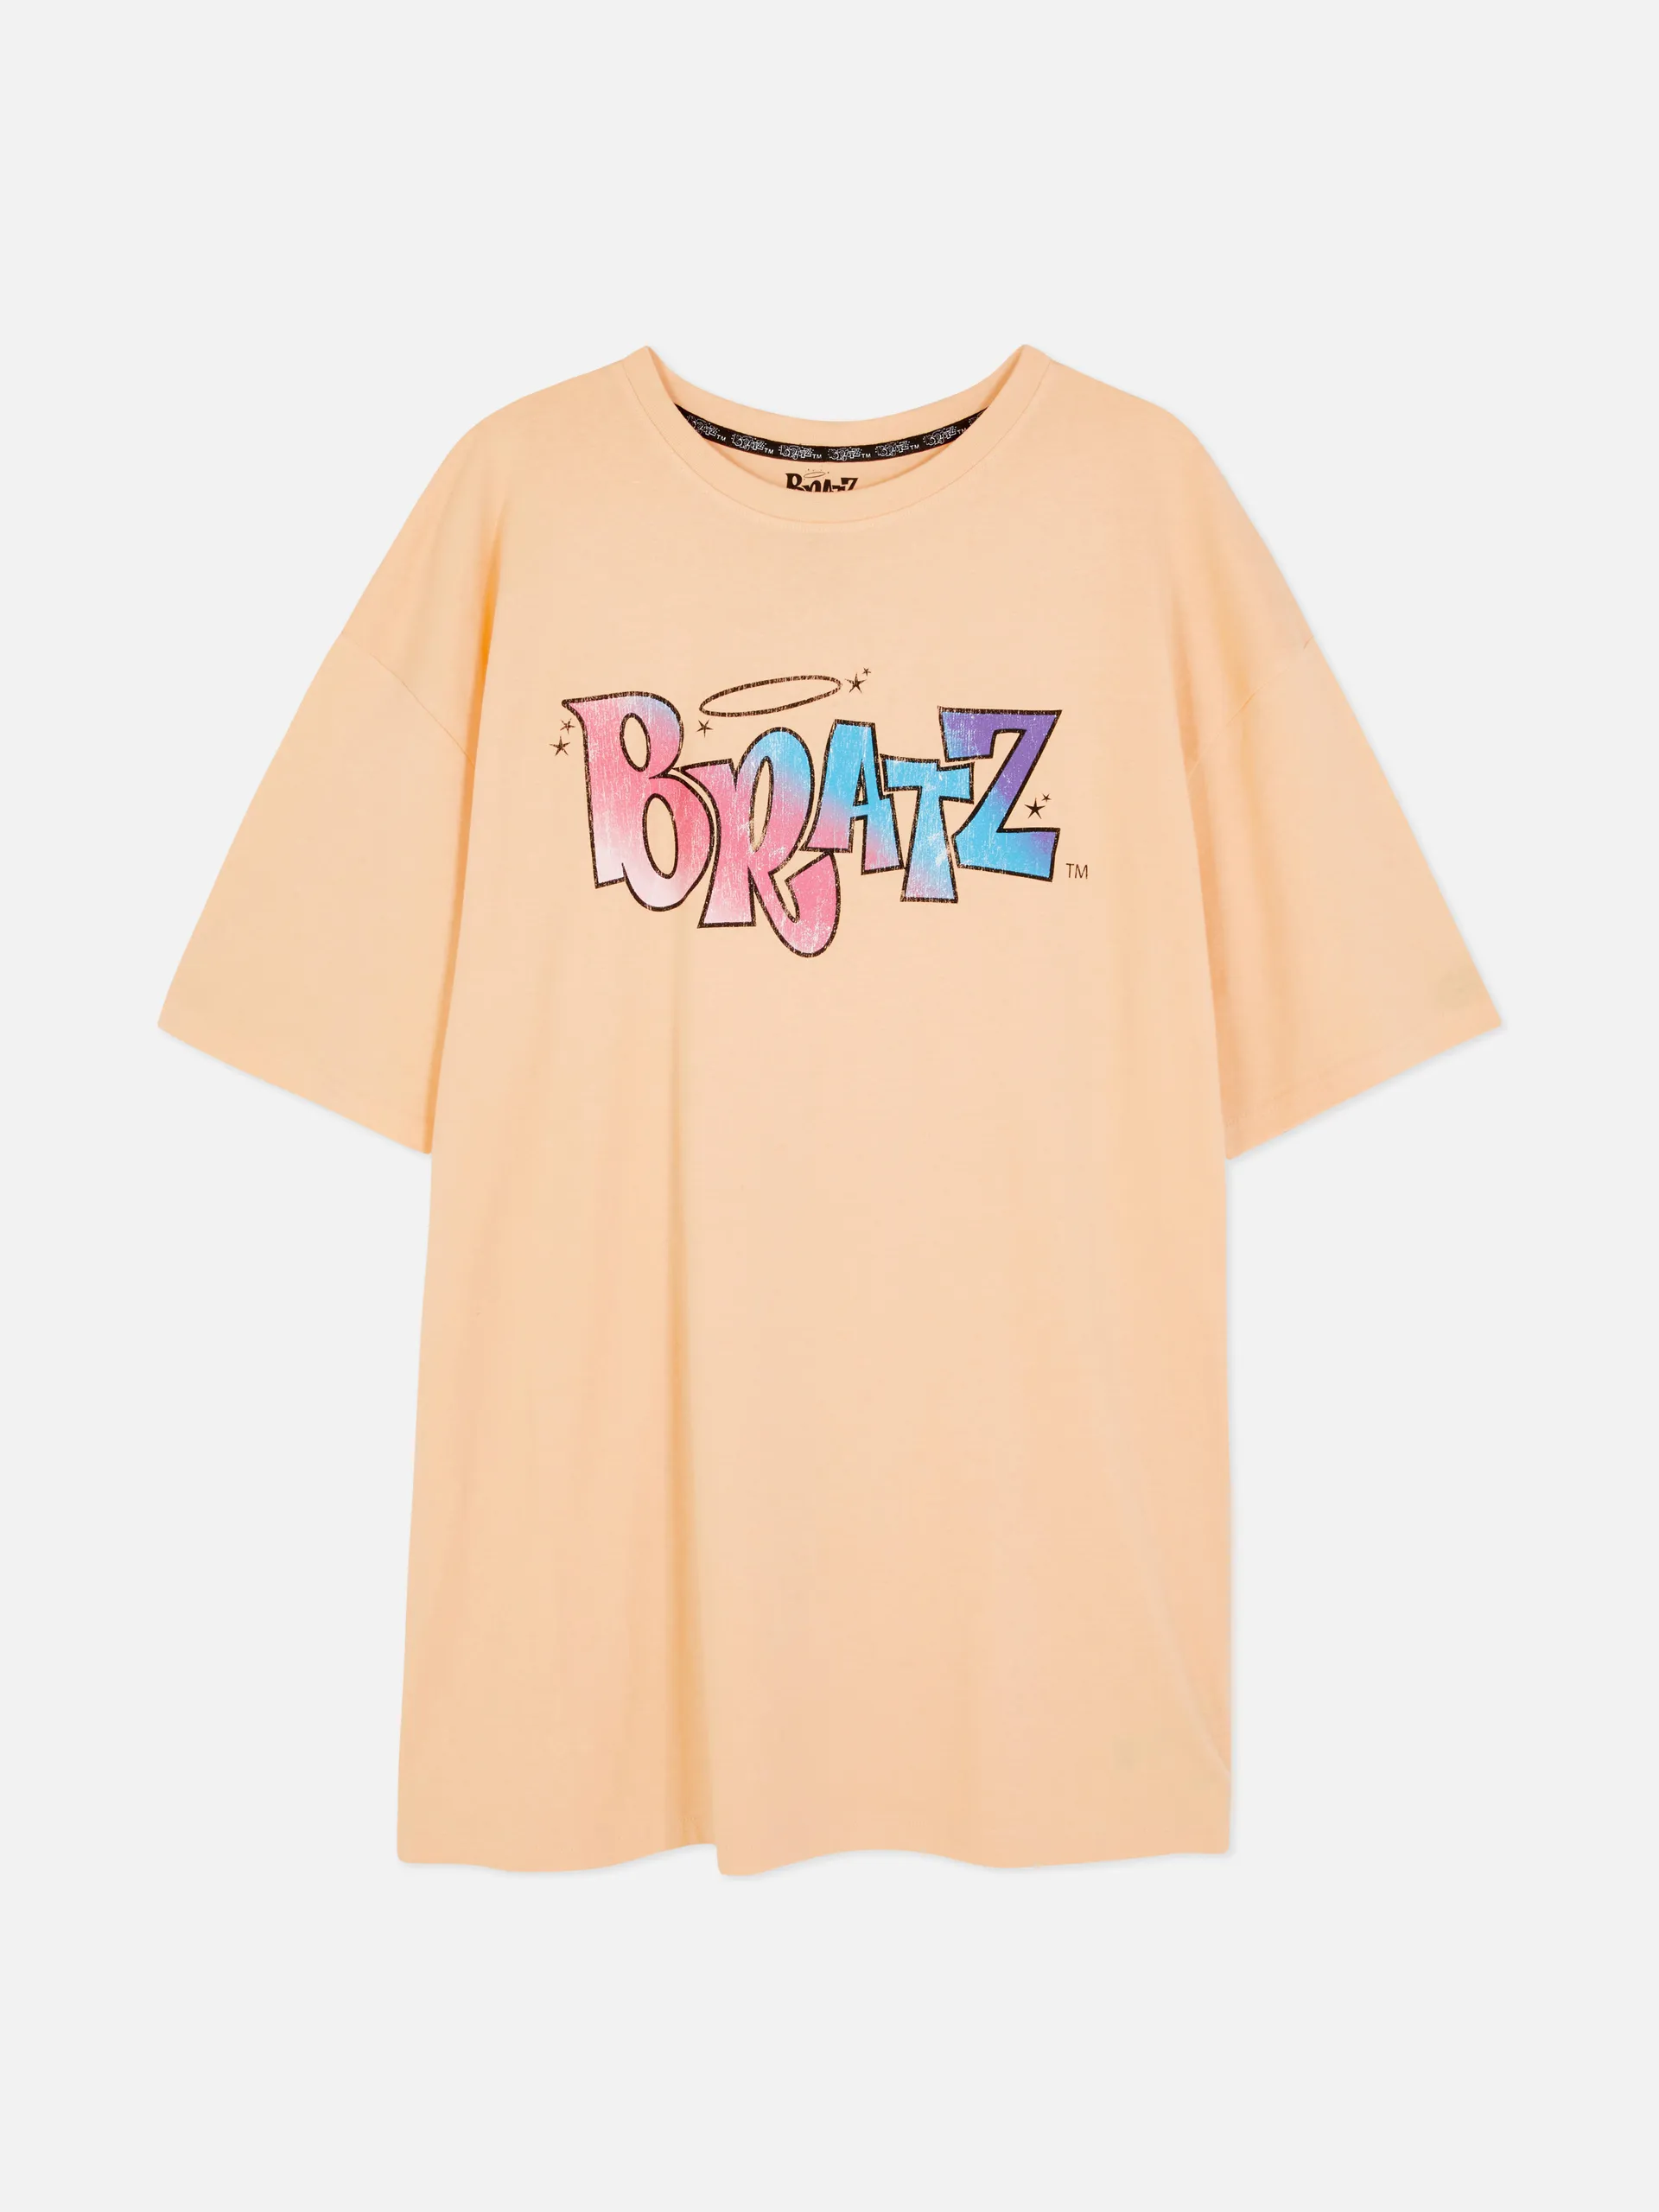 Bratz Night T-Shirt